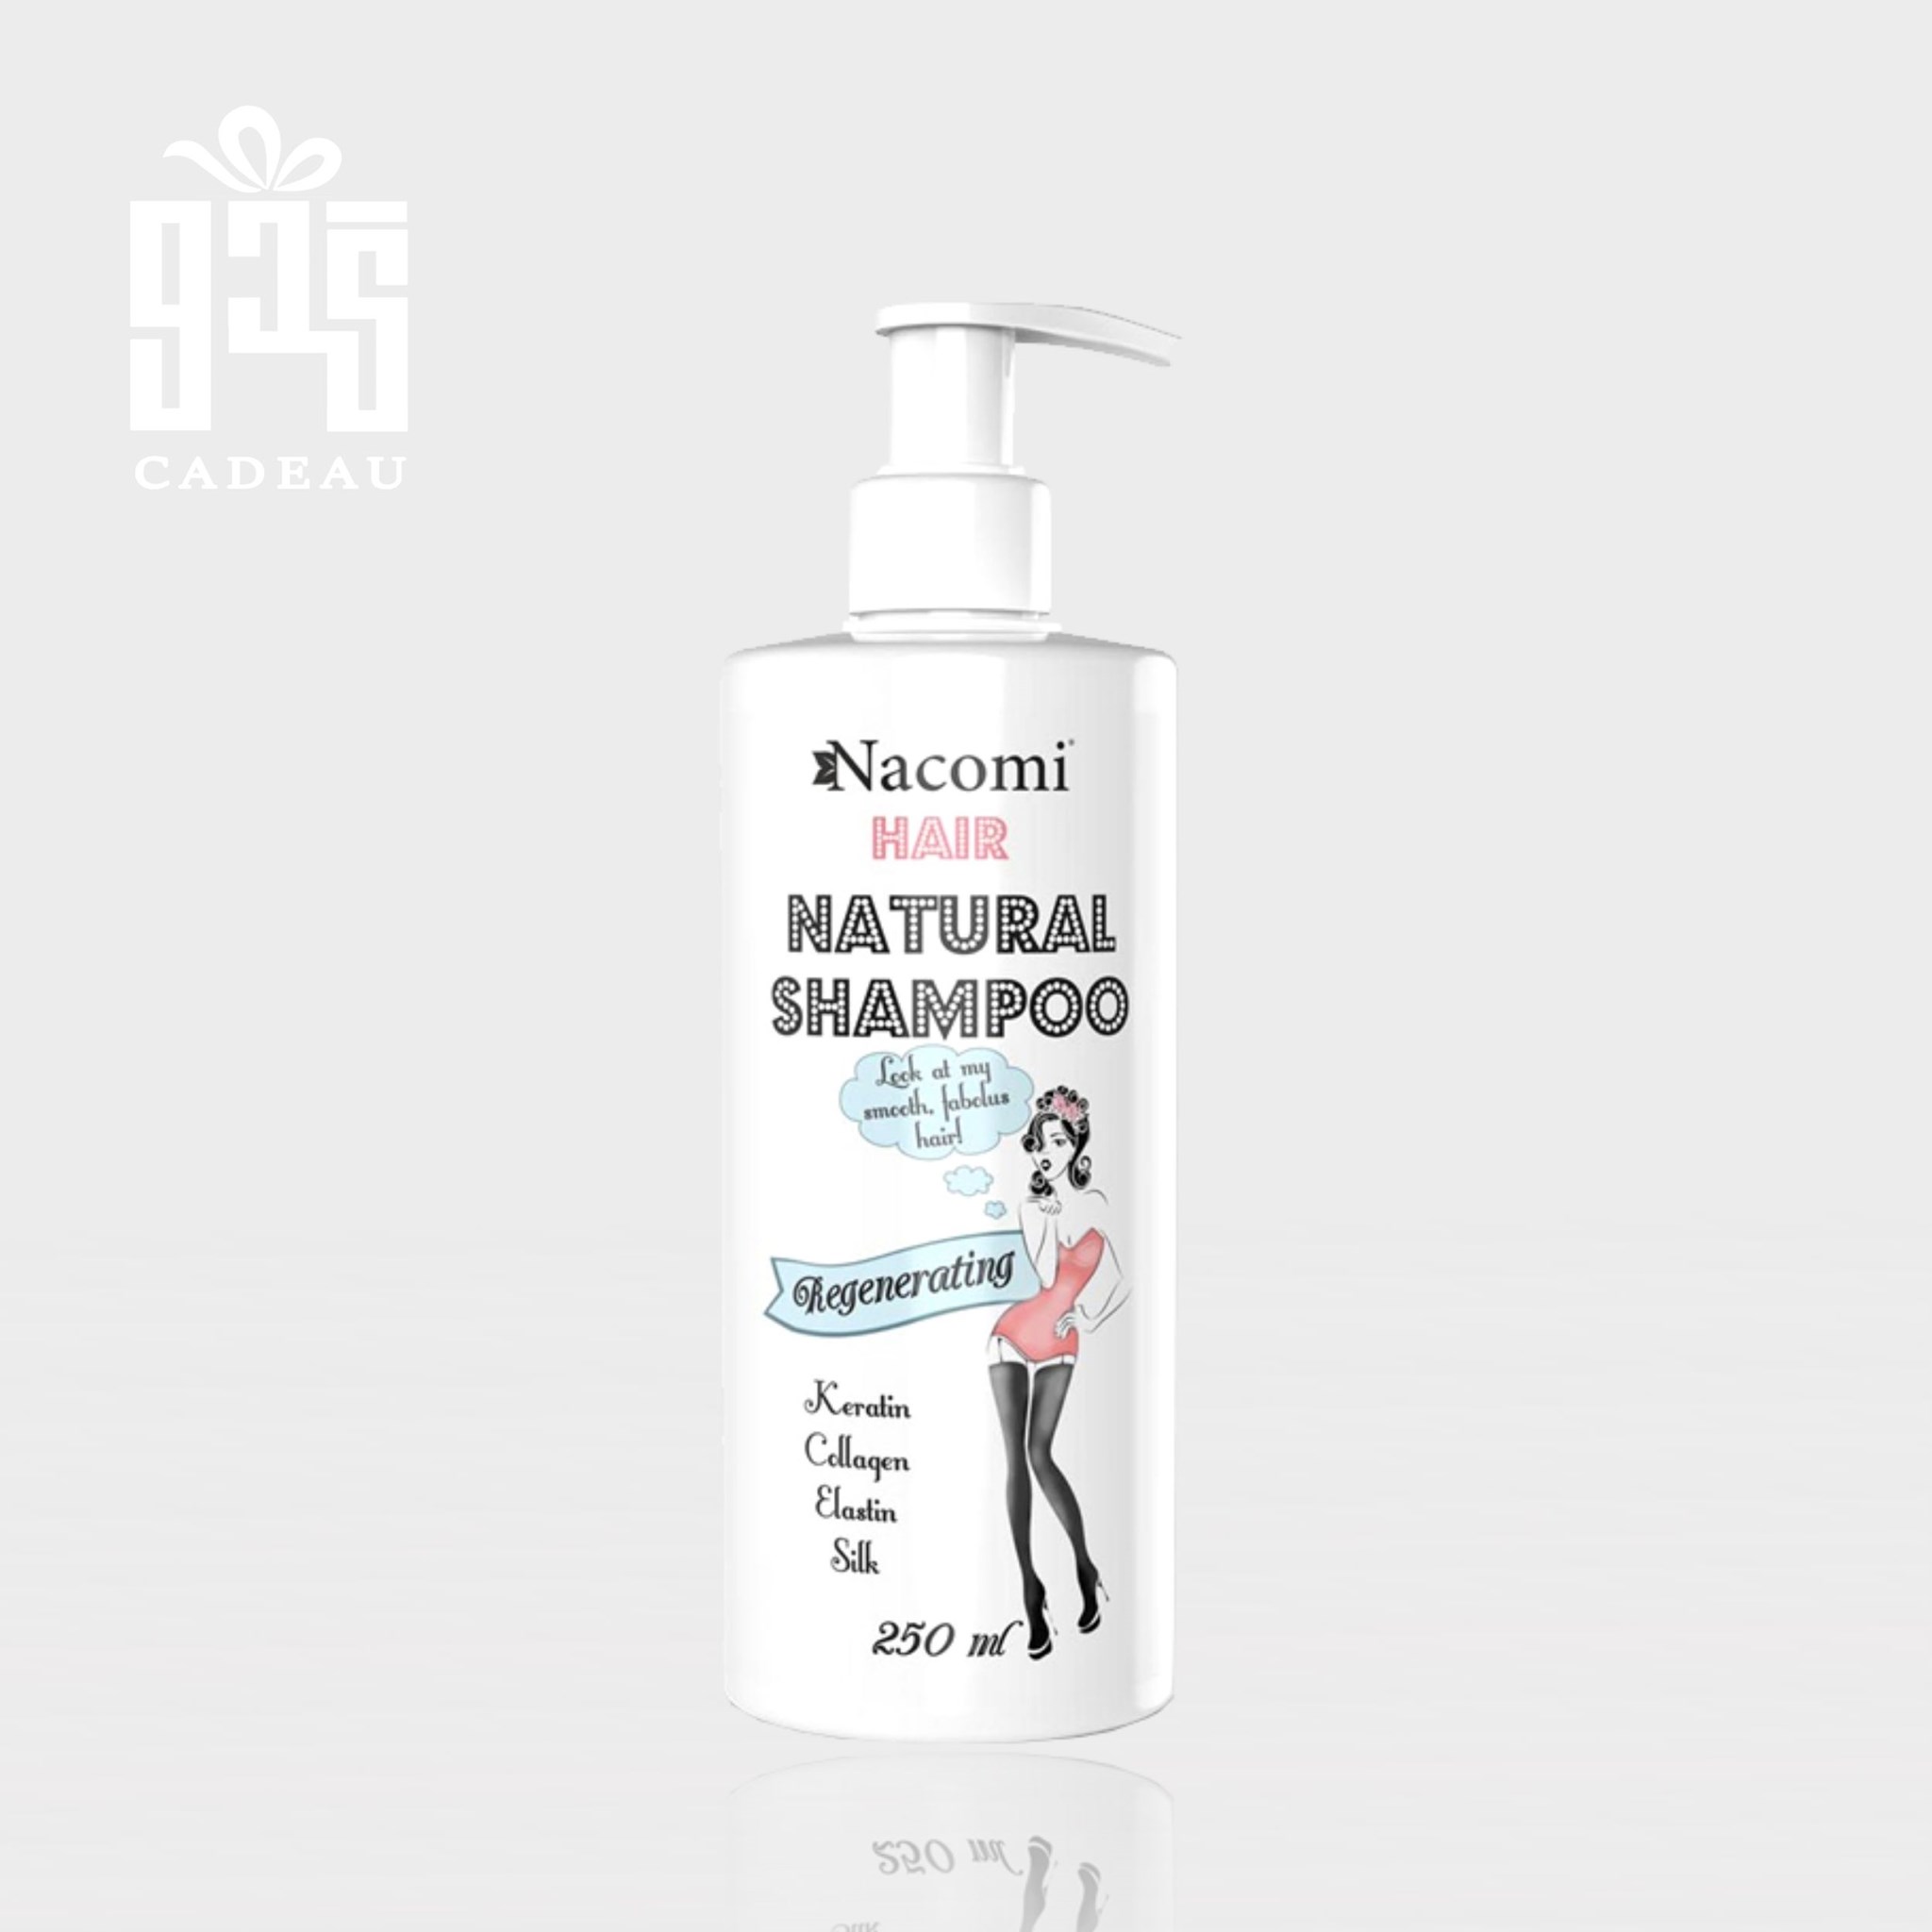 صورة المنتج ناكومي شامبو الشعر الطبيعي لتجديد وتقوية الشعر